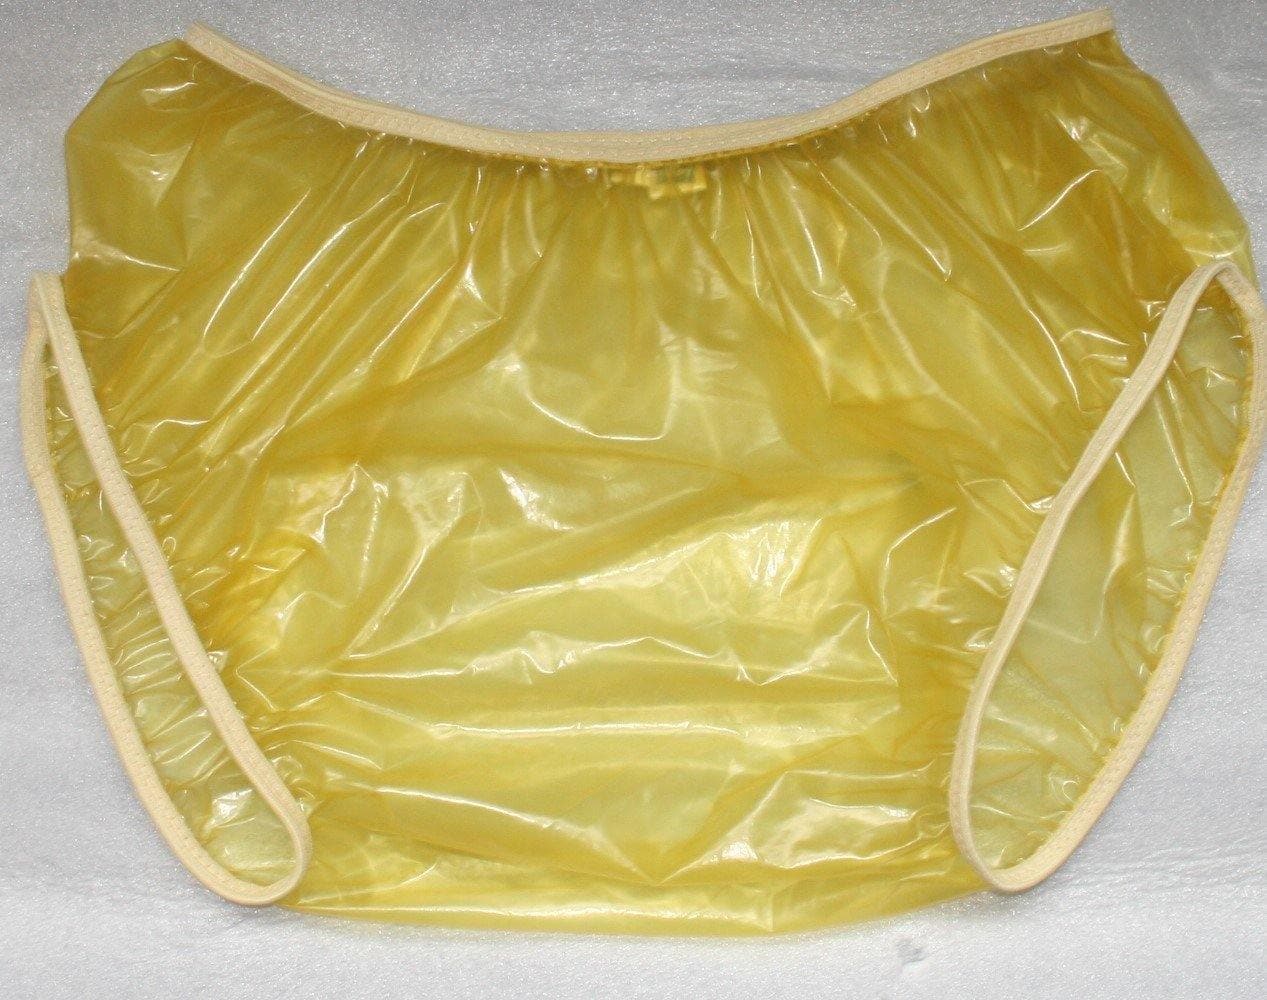 Unisex Schlüpfer Euroflex Gummi-PVC gelb transparent - auf Lager - Plastikwäsche zum Verlieben